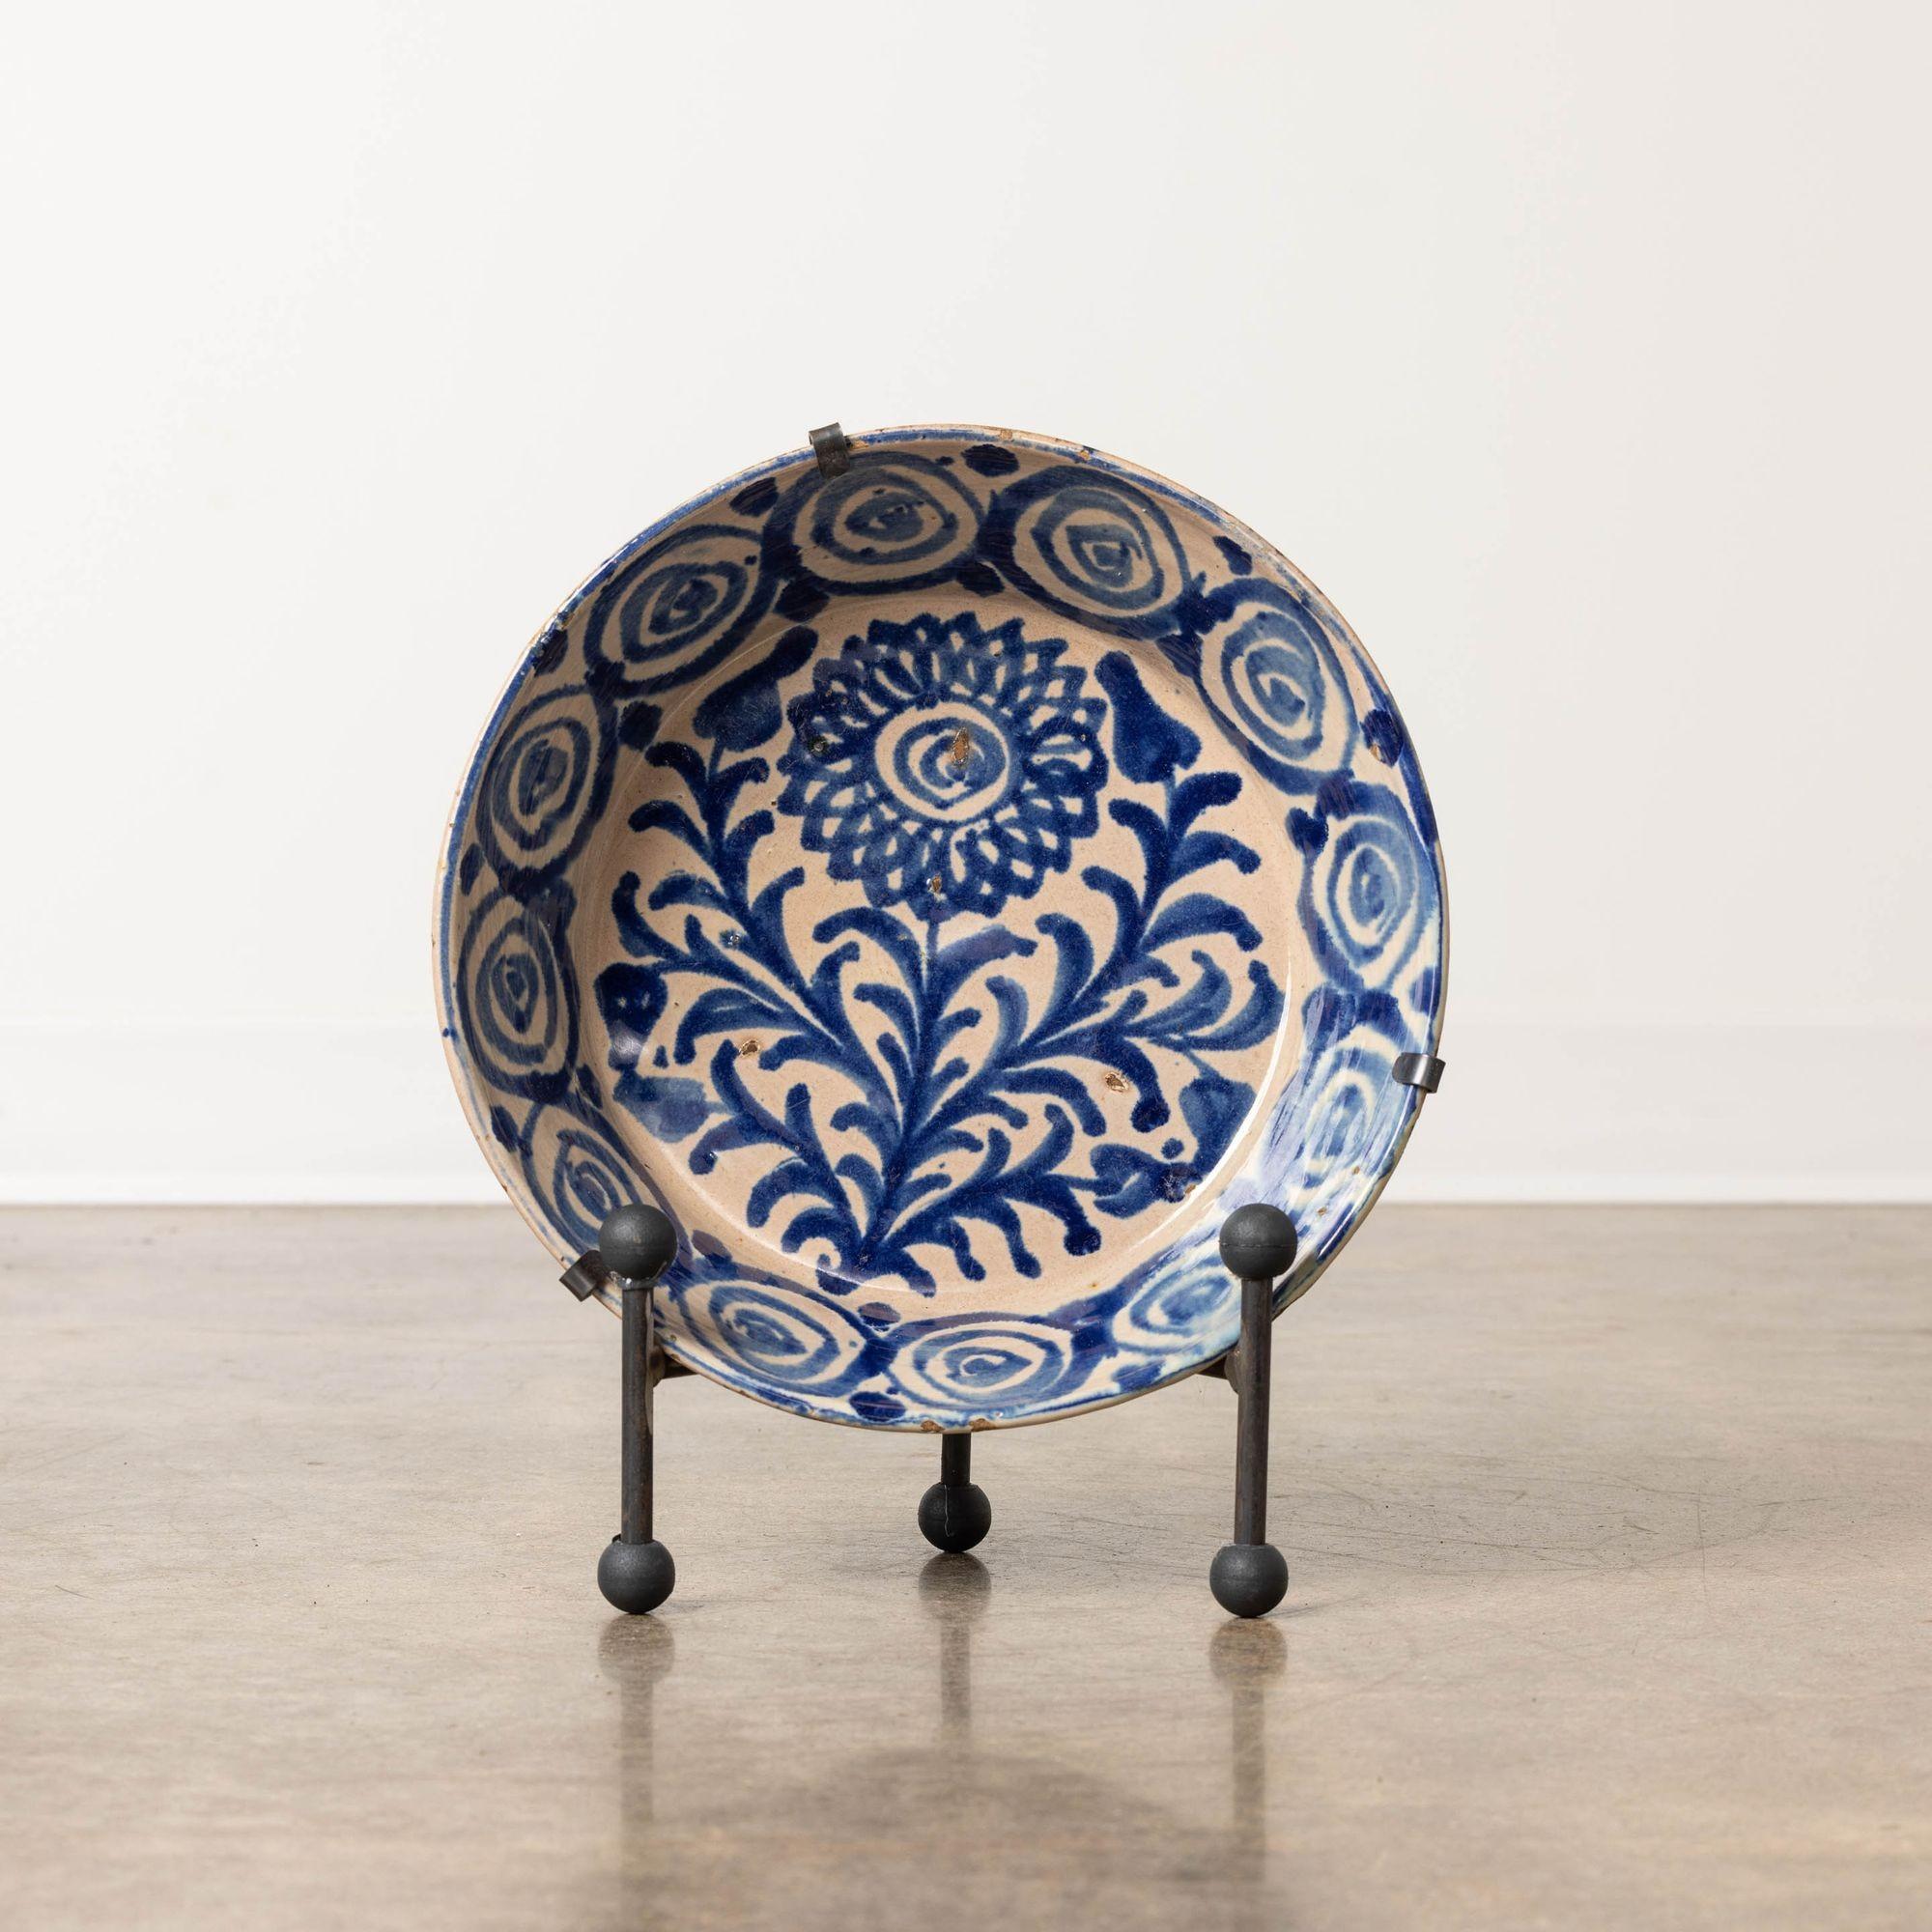 Schale aus Steingut aus Granada, Spanien, 19. Jh., blau bemalt, milchweiße Glasur. Diese tiefe Schale ist mit einem handgemalten Blumen- und Blattmotiv auf dem Schalenboden und dekorativen Seiten versehen. Verkauft mit einem handgeschmiedeten